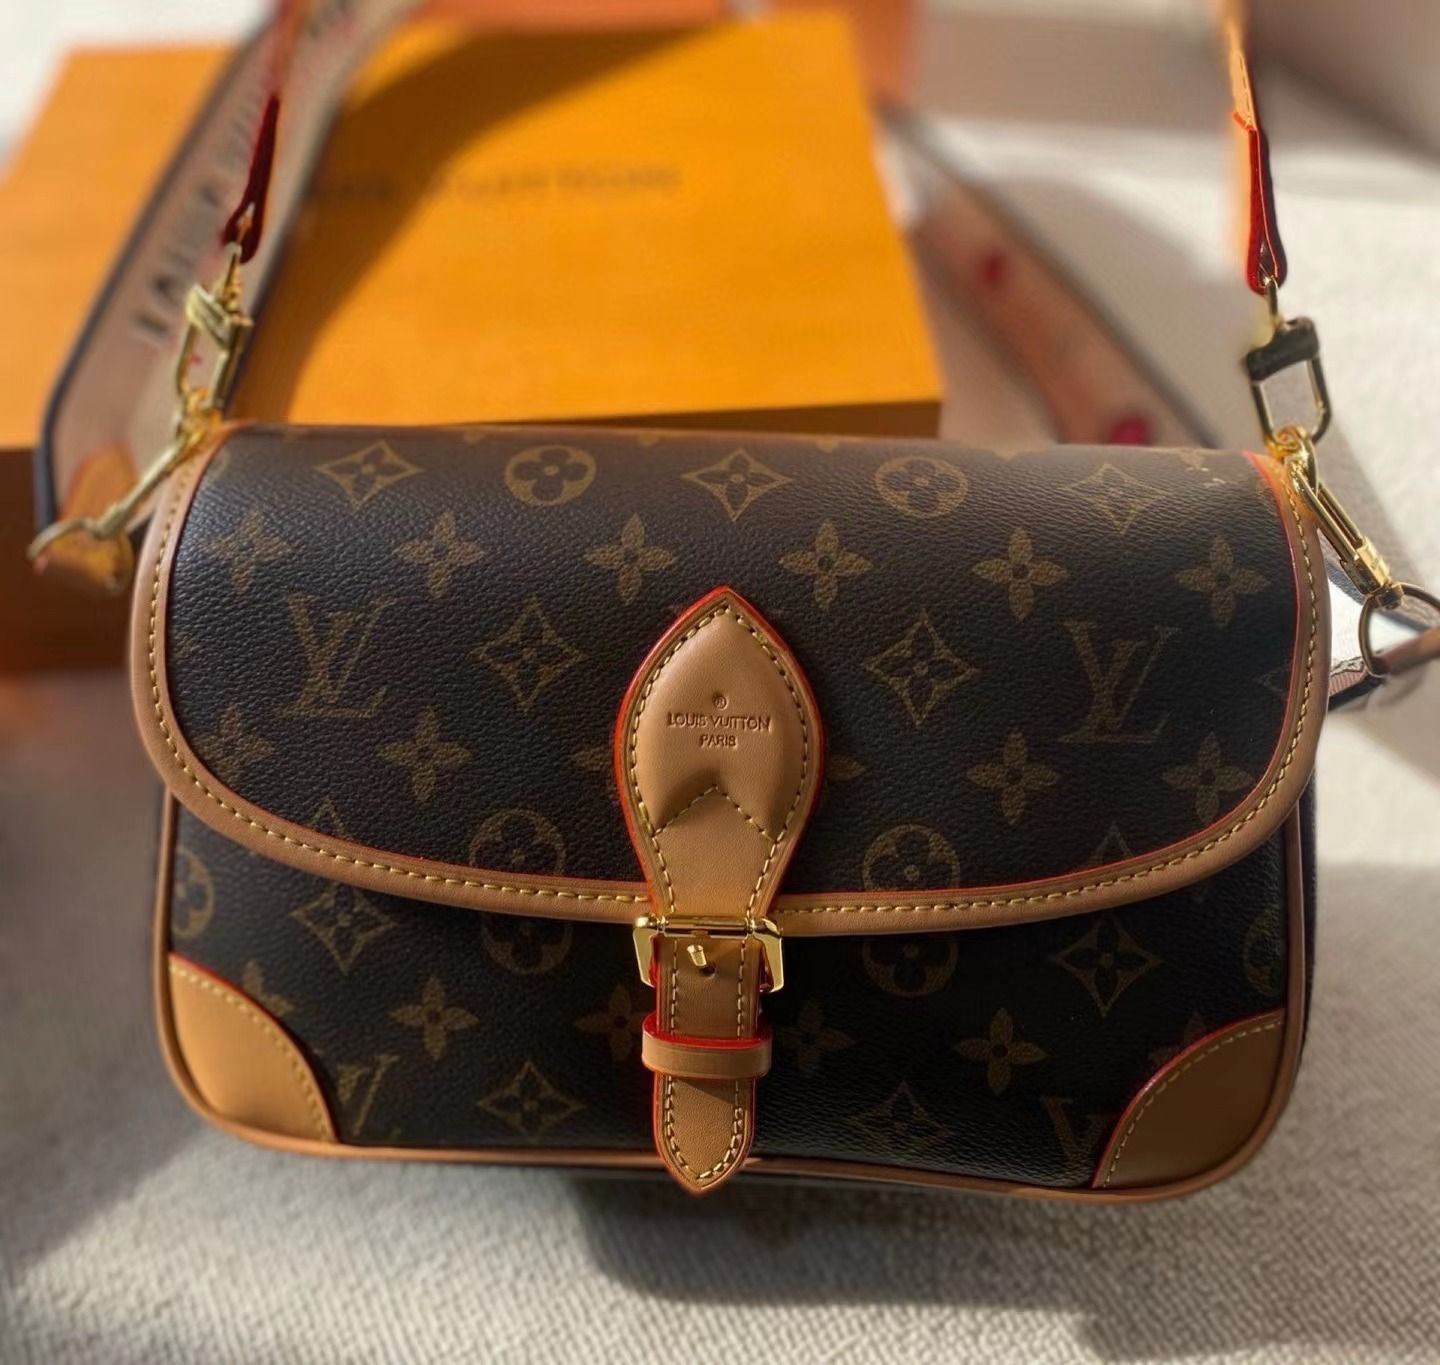 即購入不可 ！！ルイヴィトン Louis Vuitton バック箱保存袋